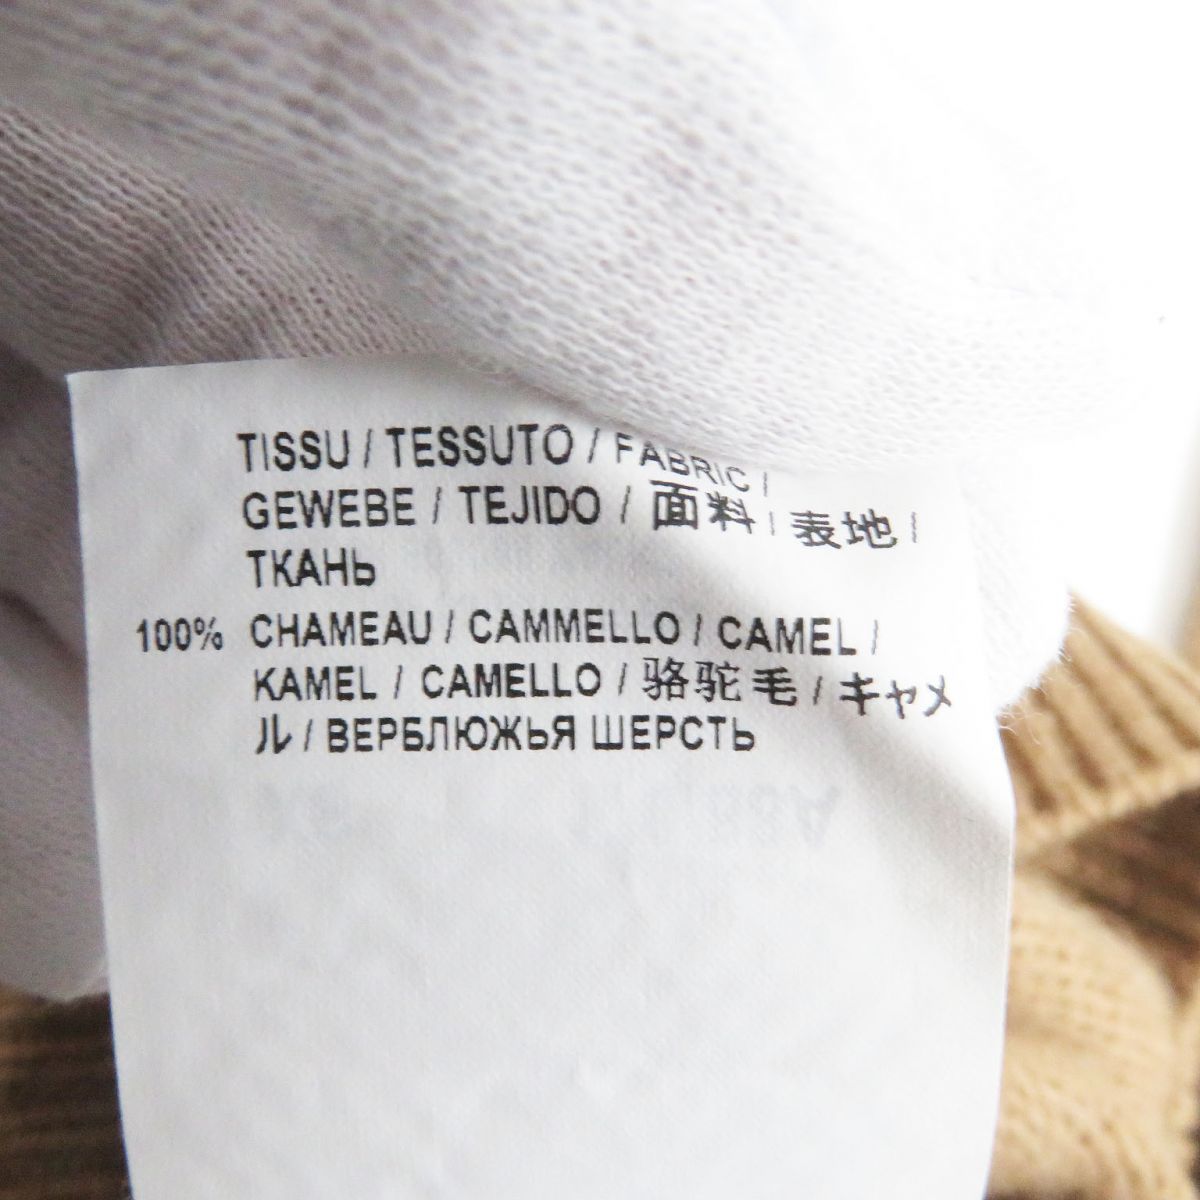  прекрасный товар *2019 год производства SAINT LAURENT RARIS/ солнечный rolan Париж 603088 Camel 100% длинный рукав вязаный / свитер светло-коричневый XS Италия производства стандартный товар 